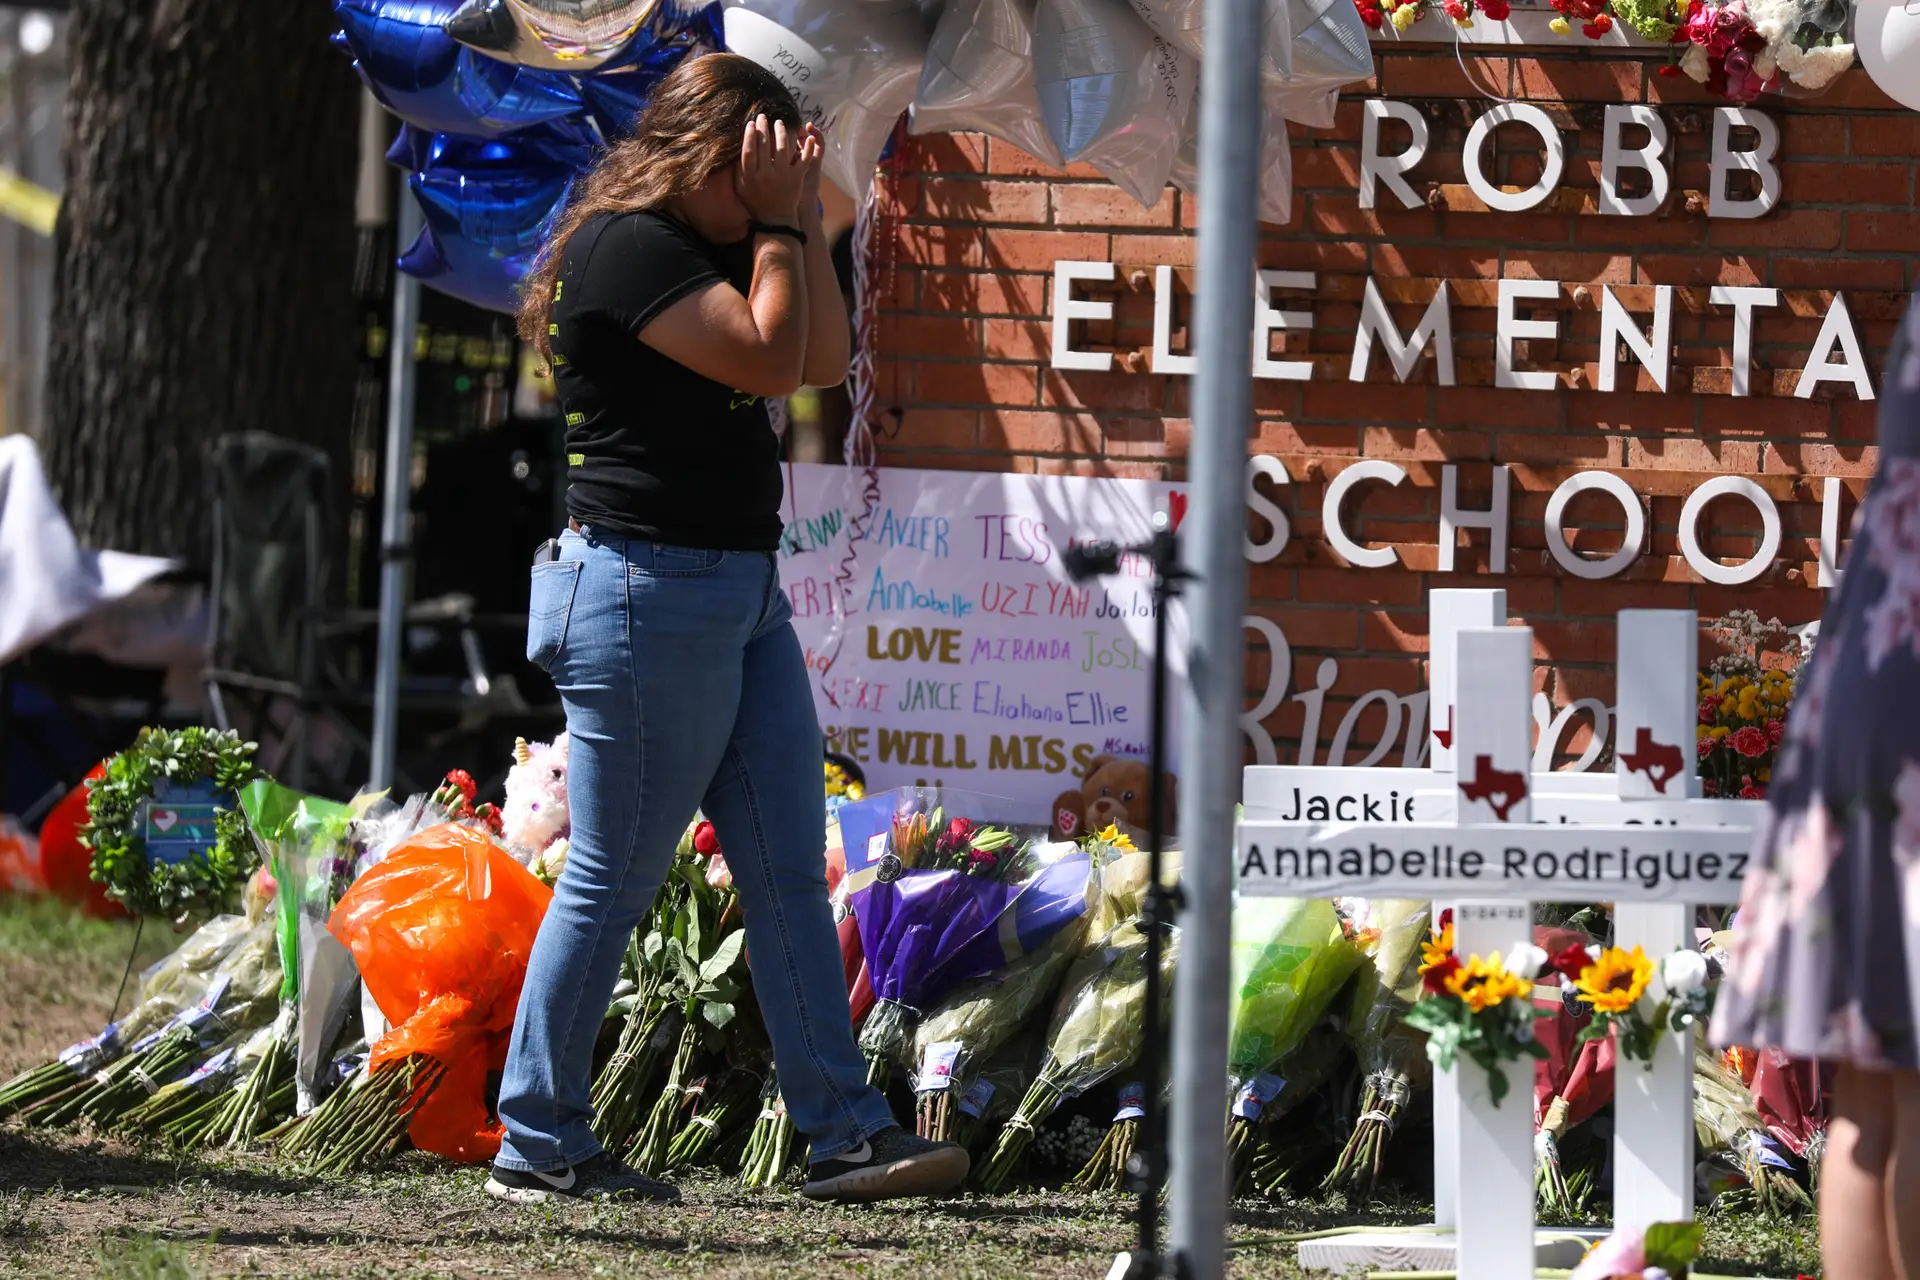 Massacre em escola no Texas: relatório denuncia “erros sistémicos”, ausência de comando e polícias “apáticos”